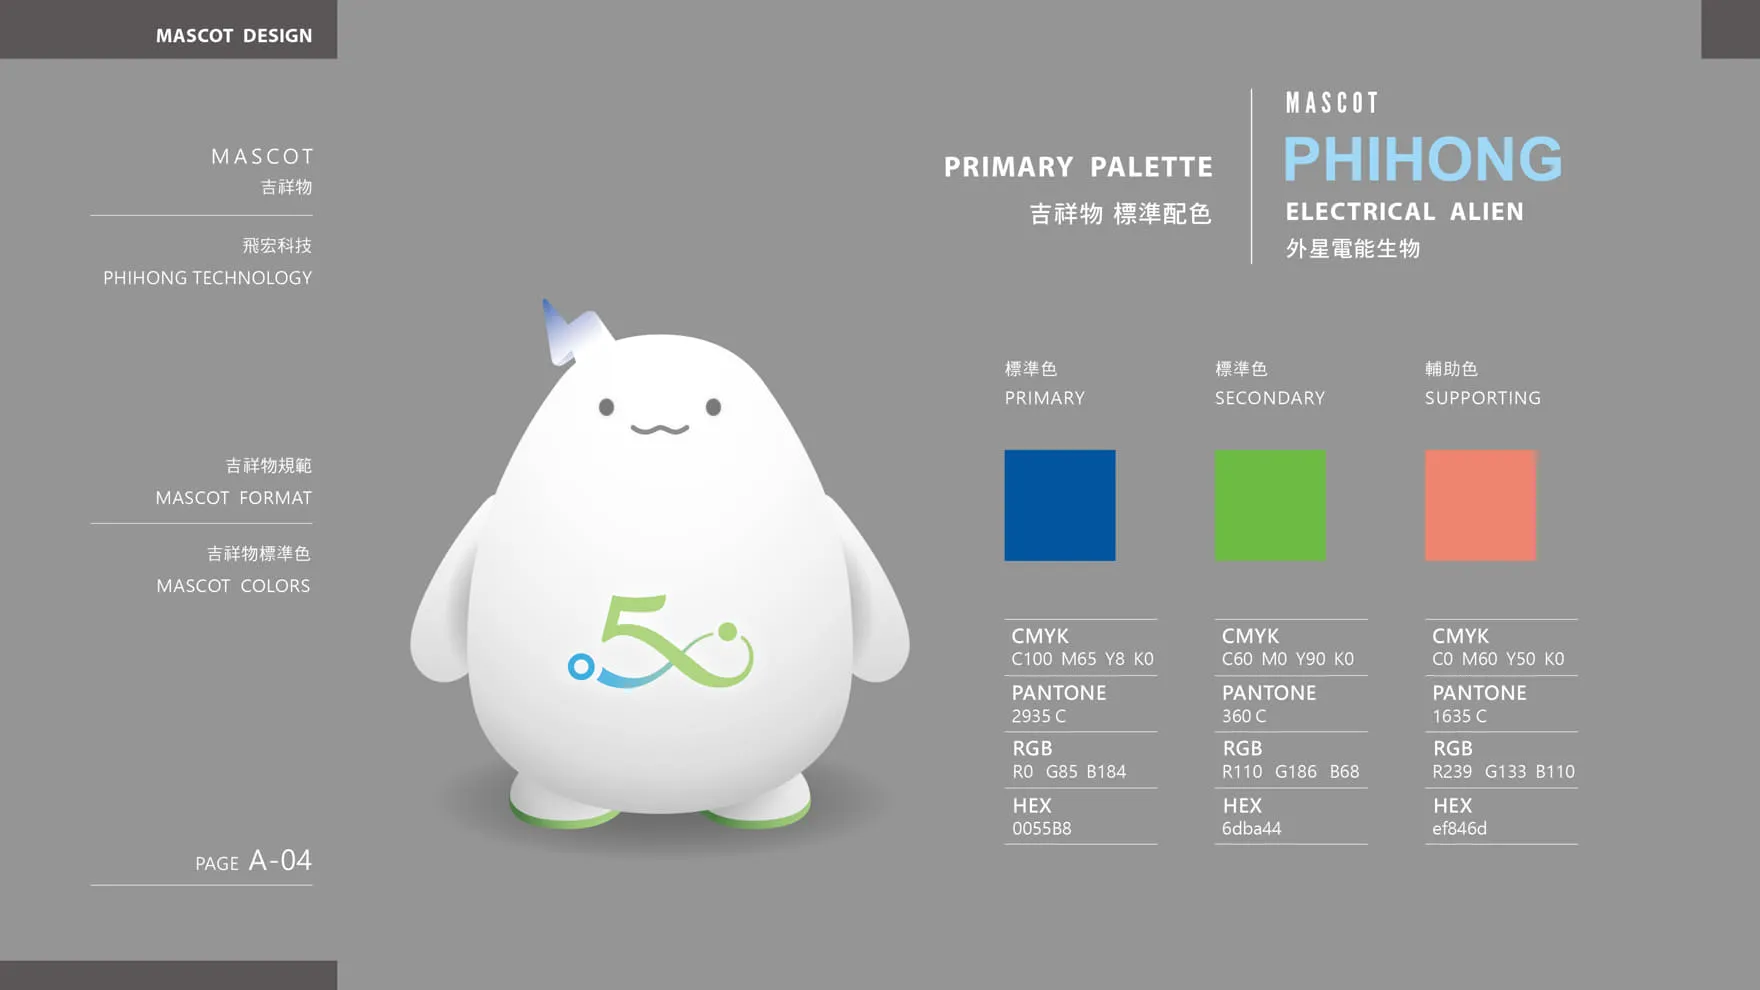 飛宏科技企業吉祥物設計標準色設定 Mascot Primary Palette